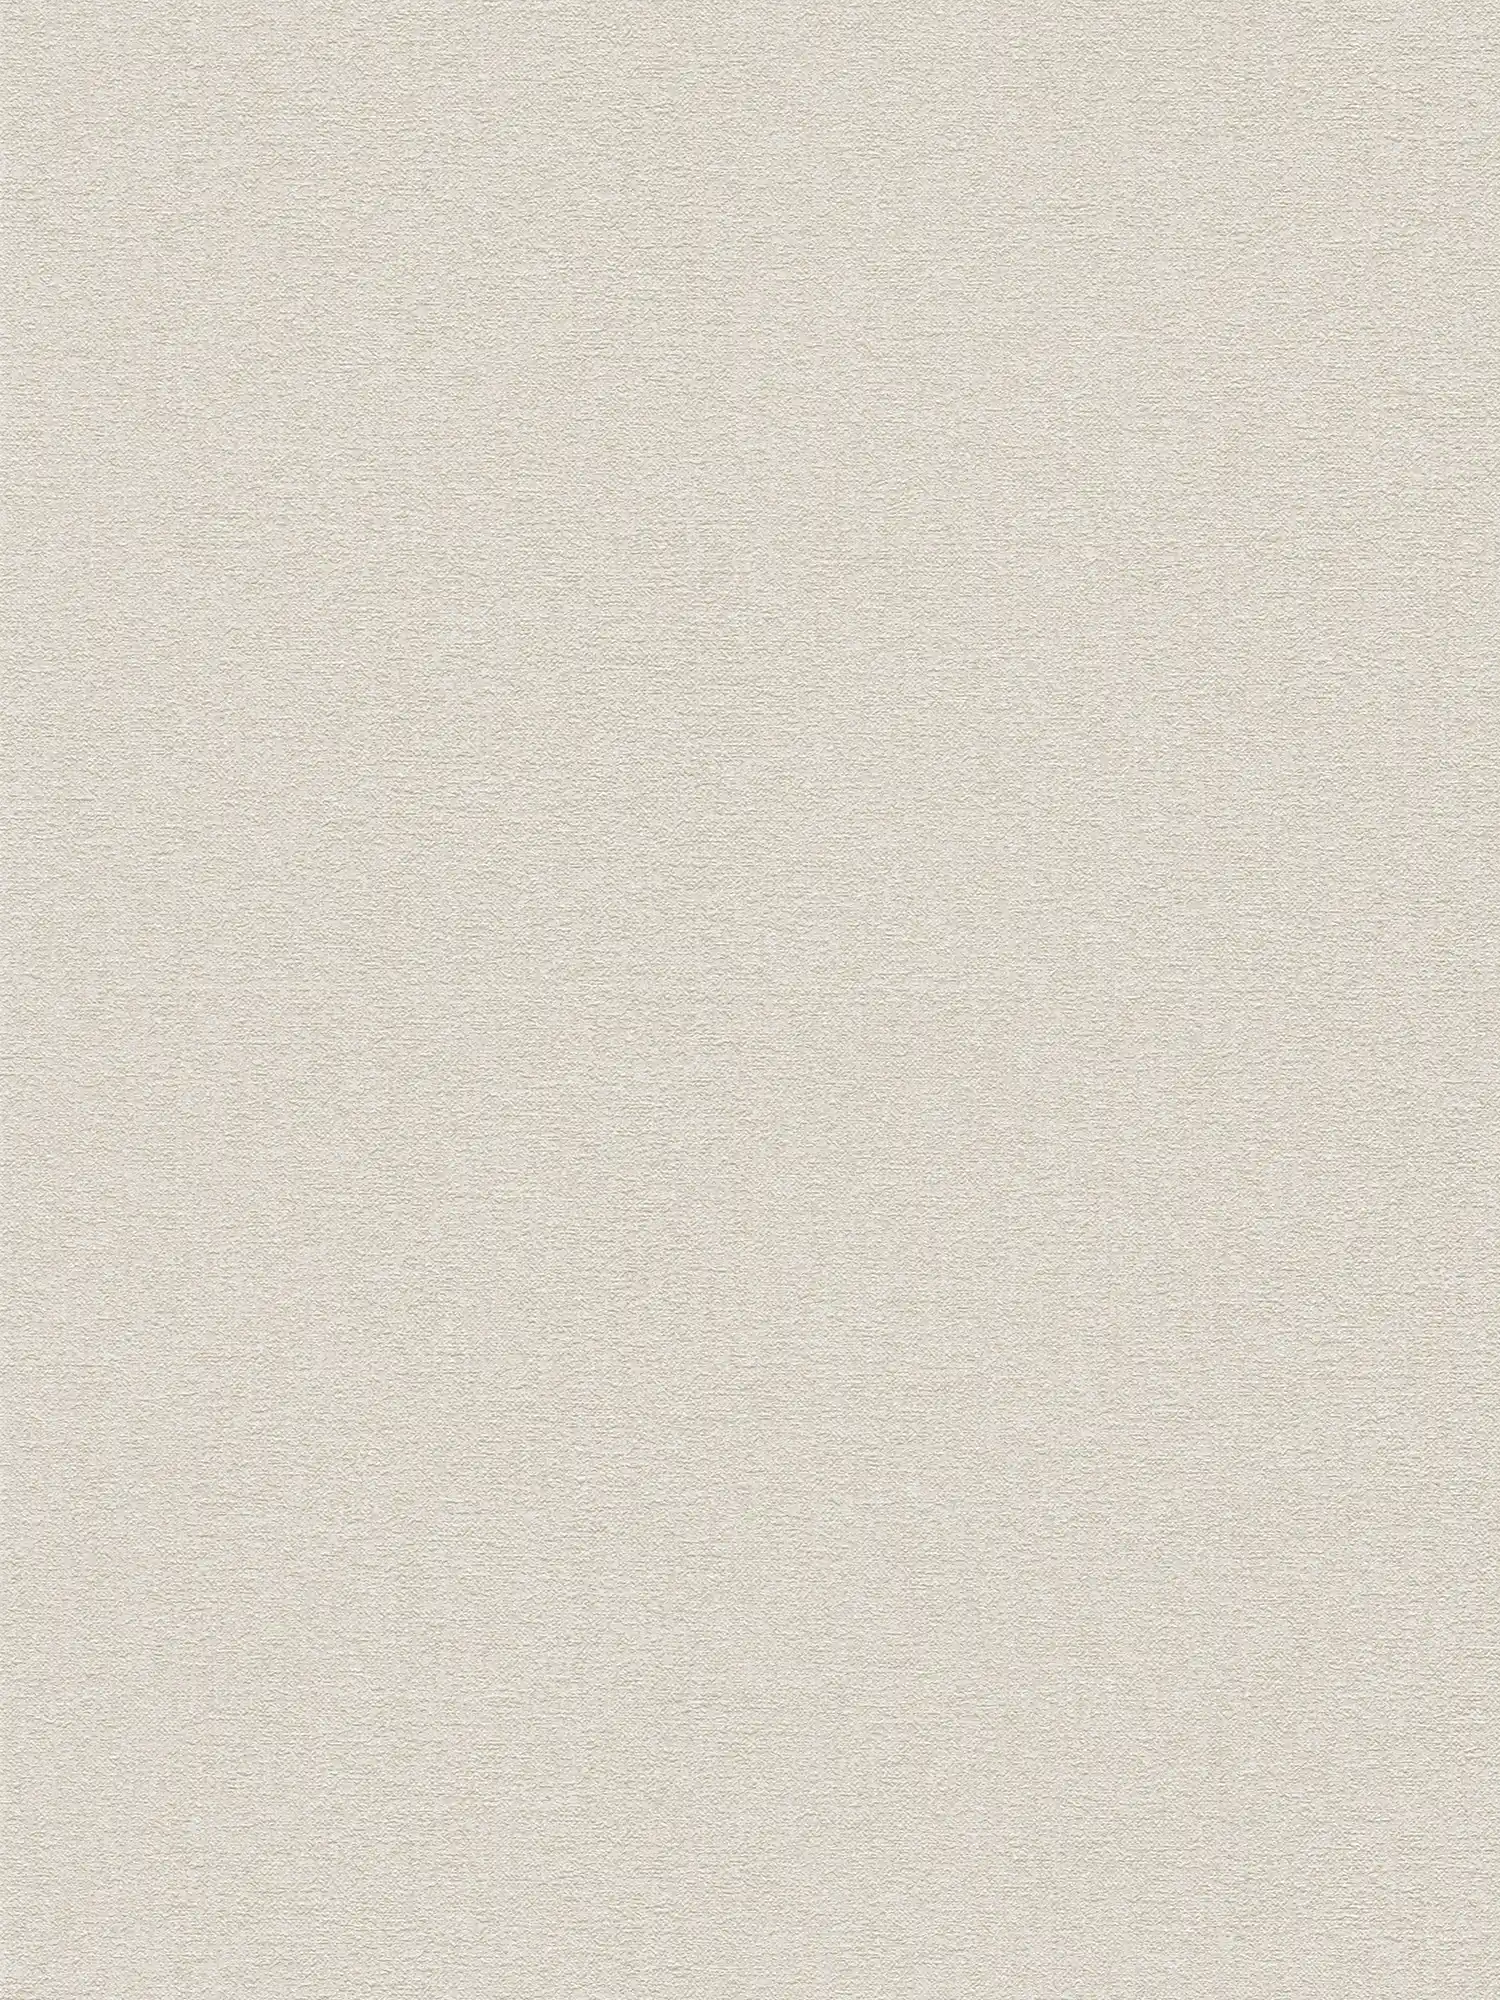 Papier peint uni avec motifs structurés unis - beige, crème
